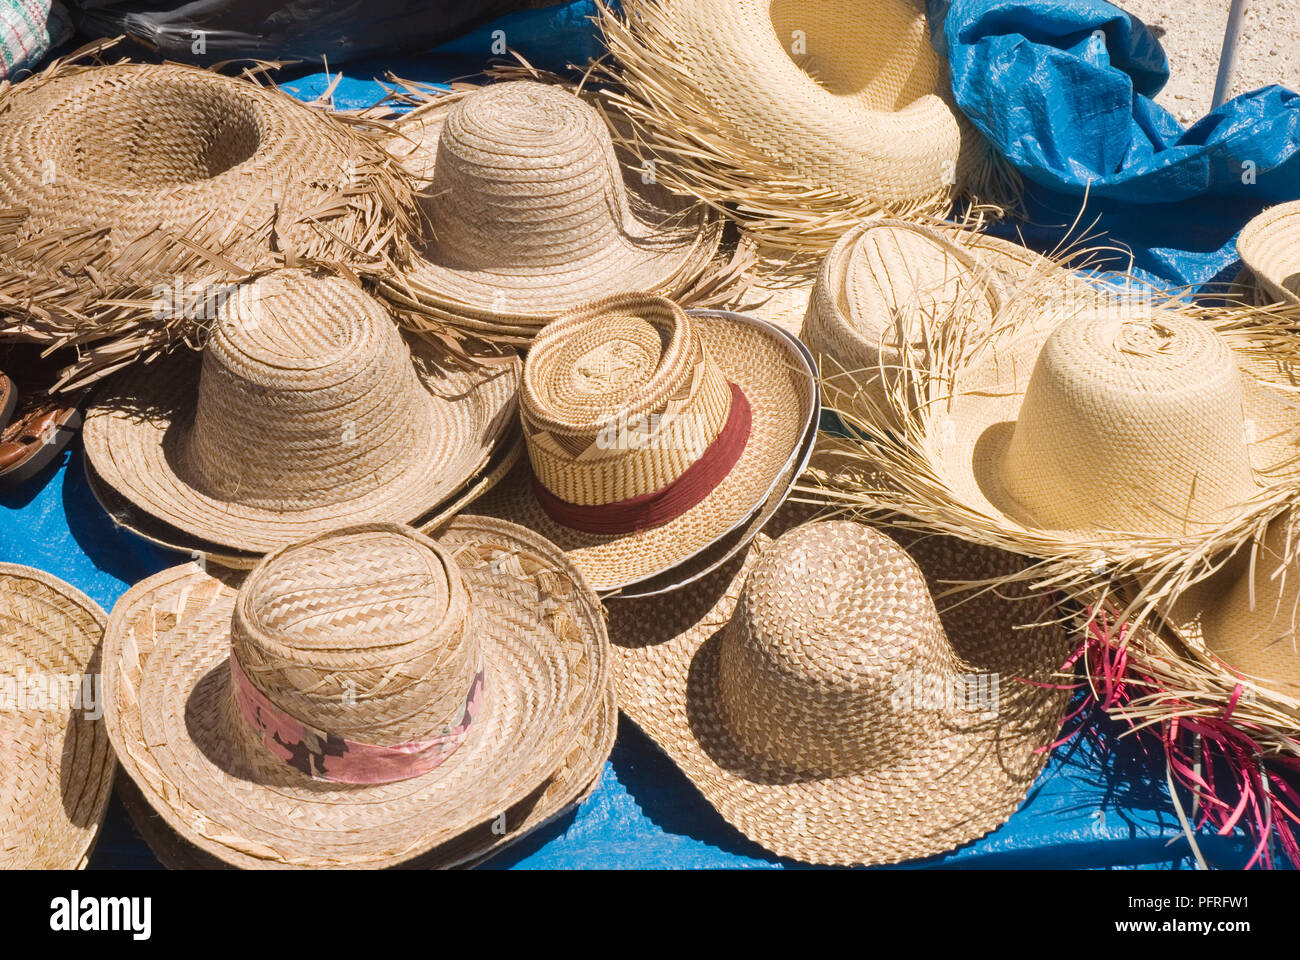 Petites Antilles, les îles sous le vent, Guadeloupe, Le Gosier, les chapeaux  de paille à vendre au marché du dimanche Photo Stock - Alamy